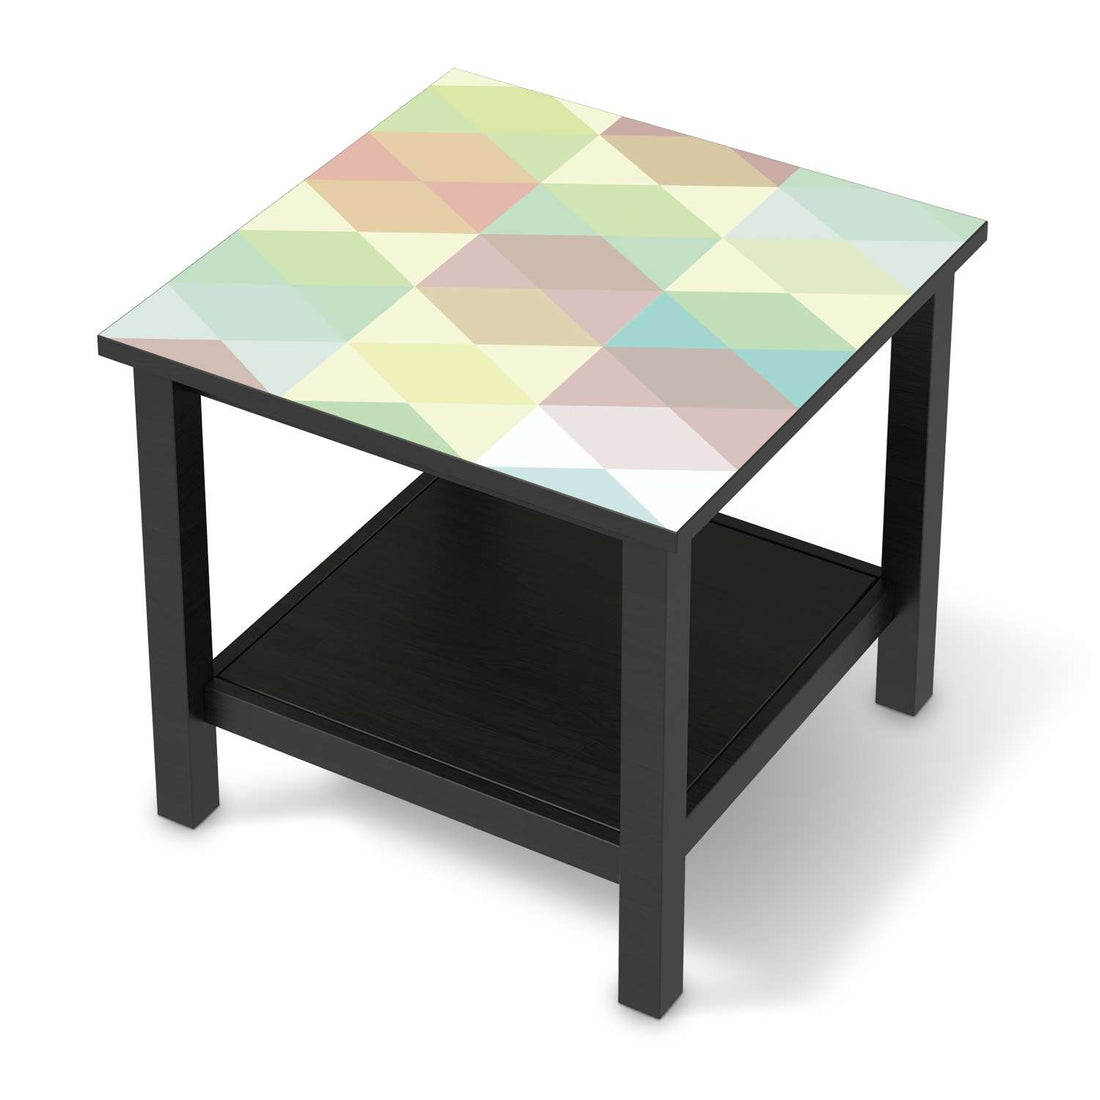 Möbel Klebefolie Melitta Pastell Geometrie - IKEA Hemnes Beistelltisch 55x55 cm - schwarz